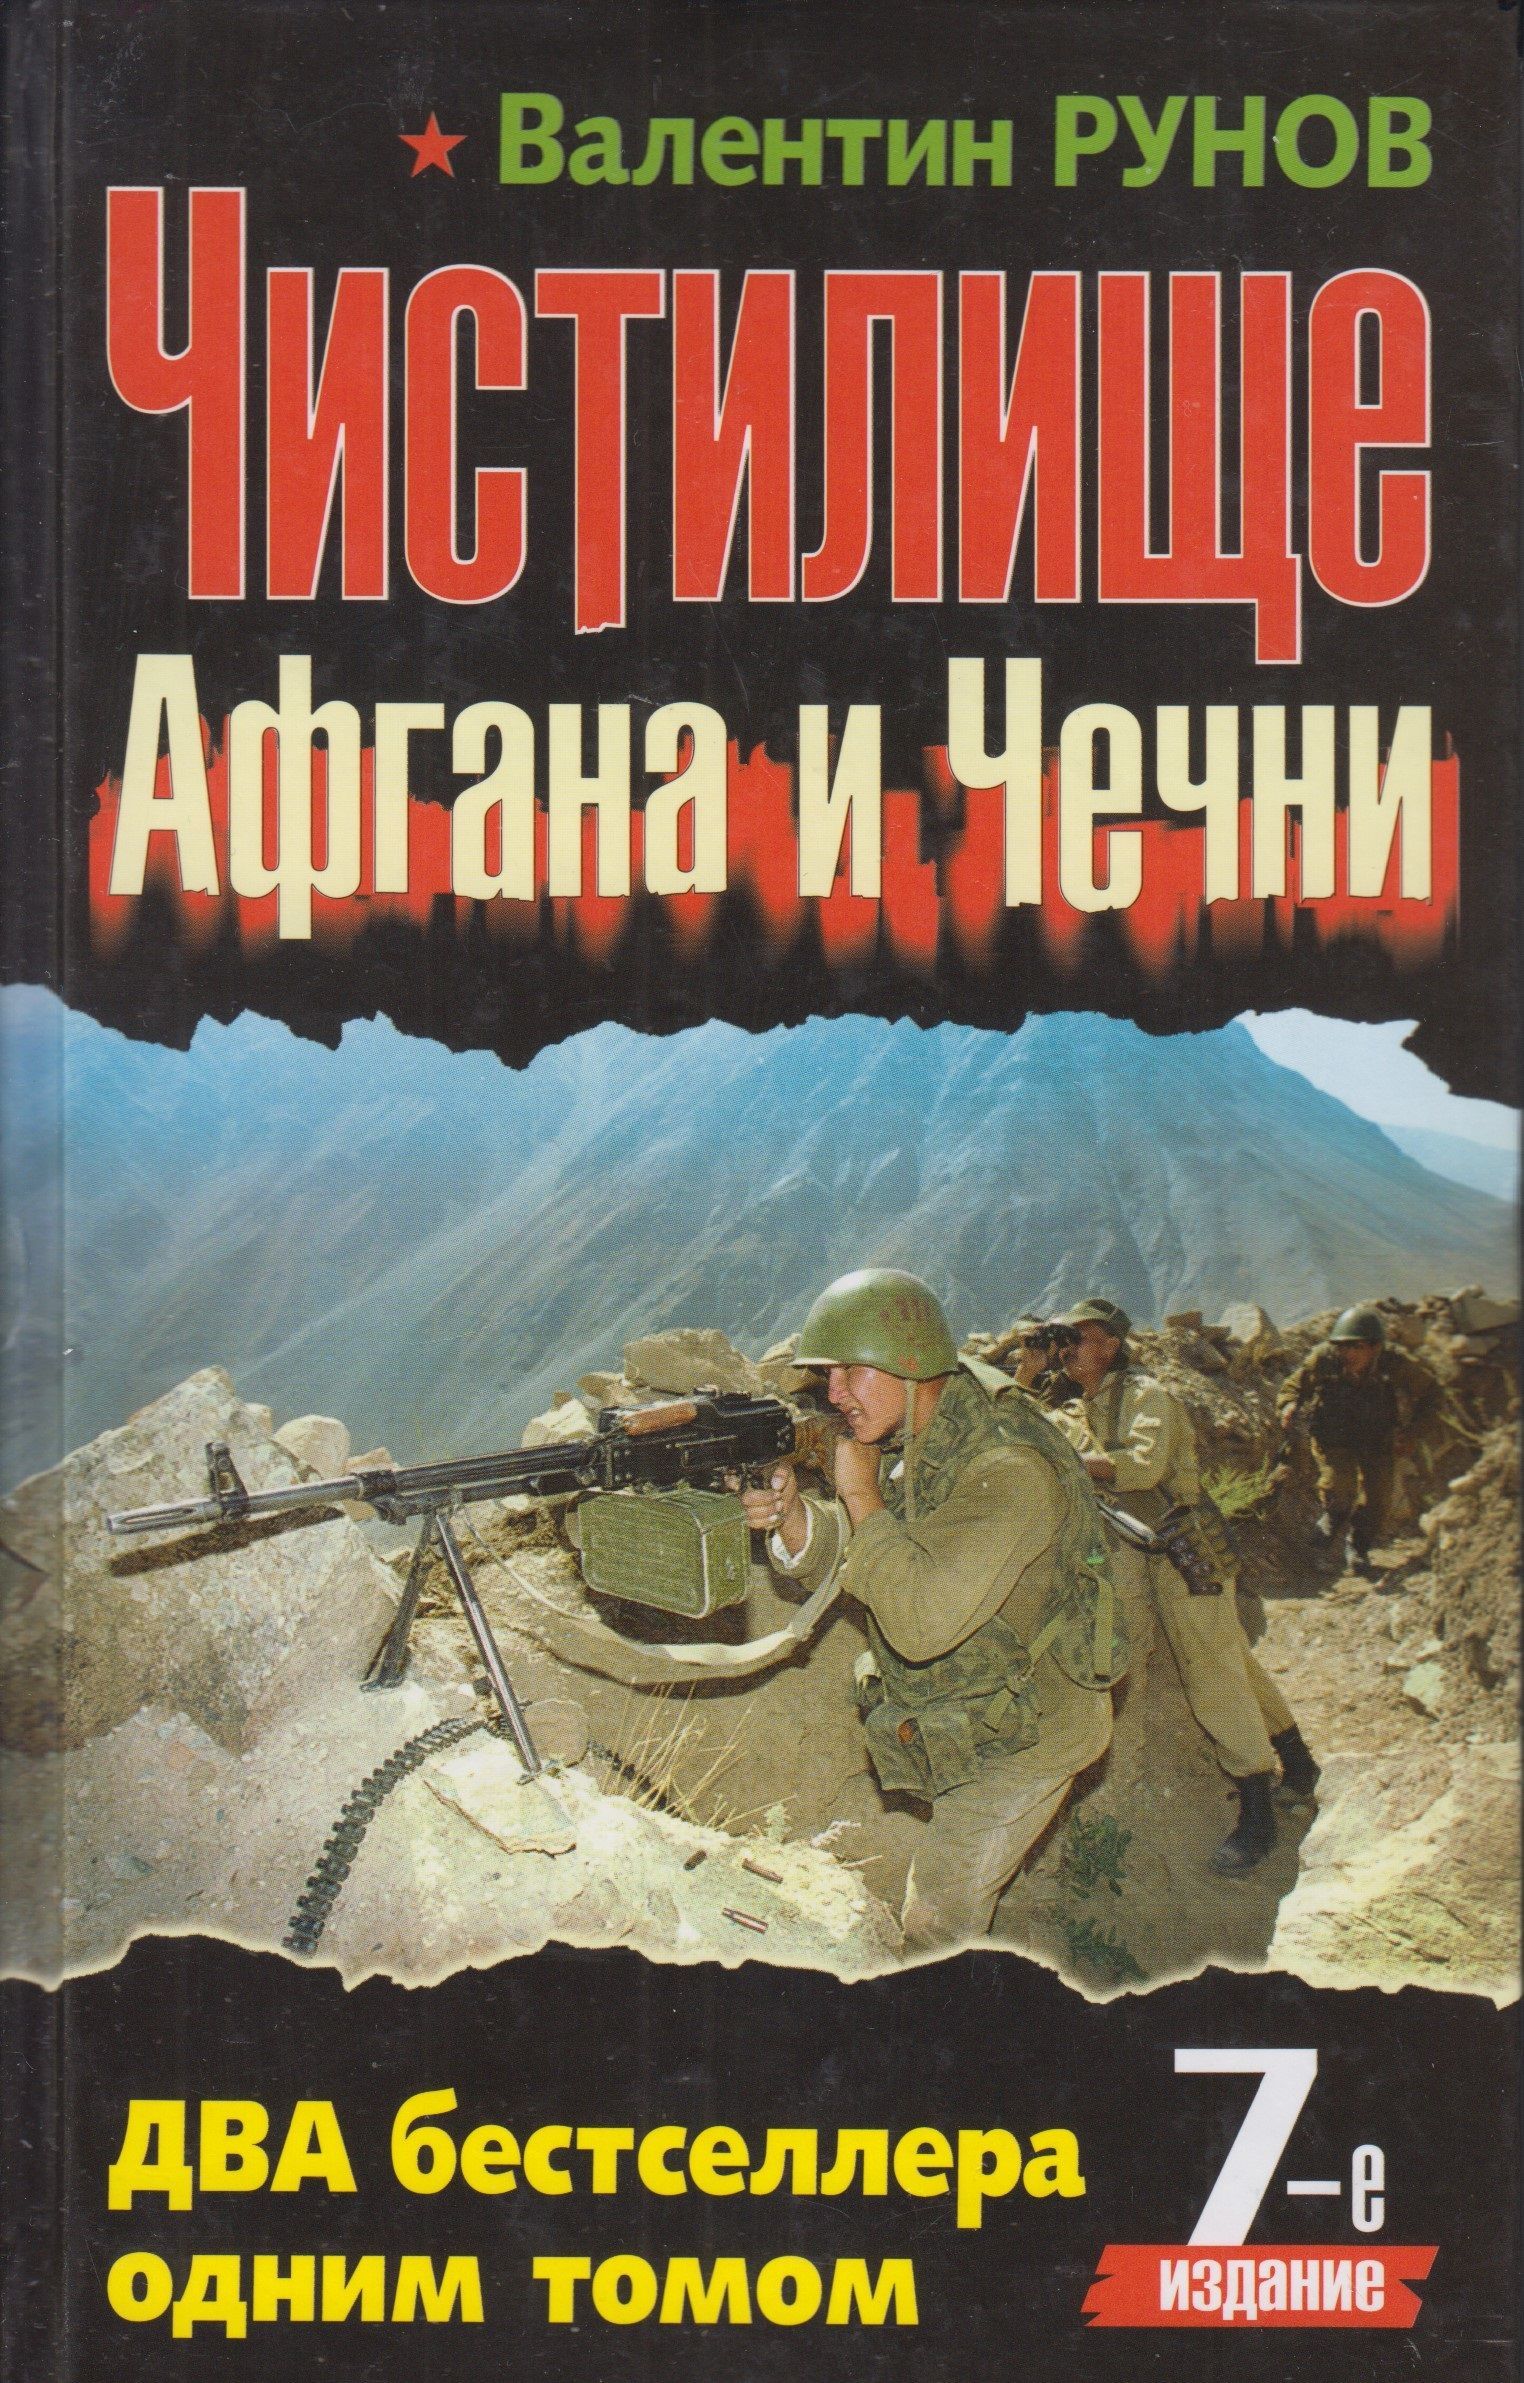 Читать книги про войну чечня. Чистилище Афгана и Чечни книга. Книги о войне в Чечне.